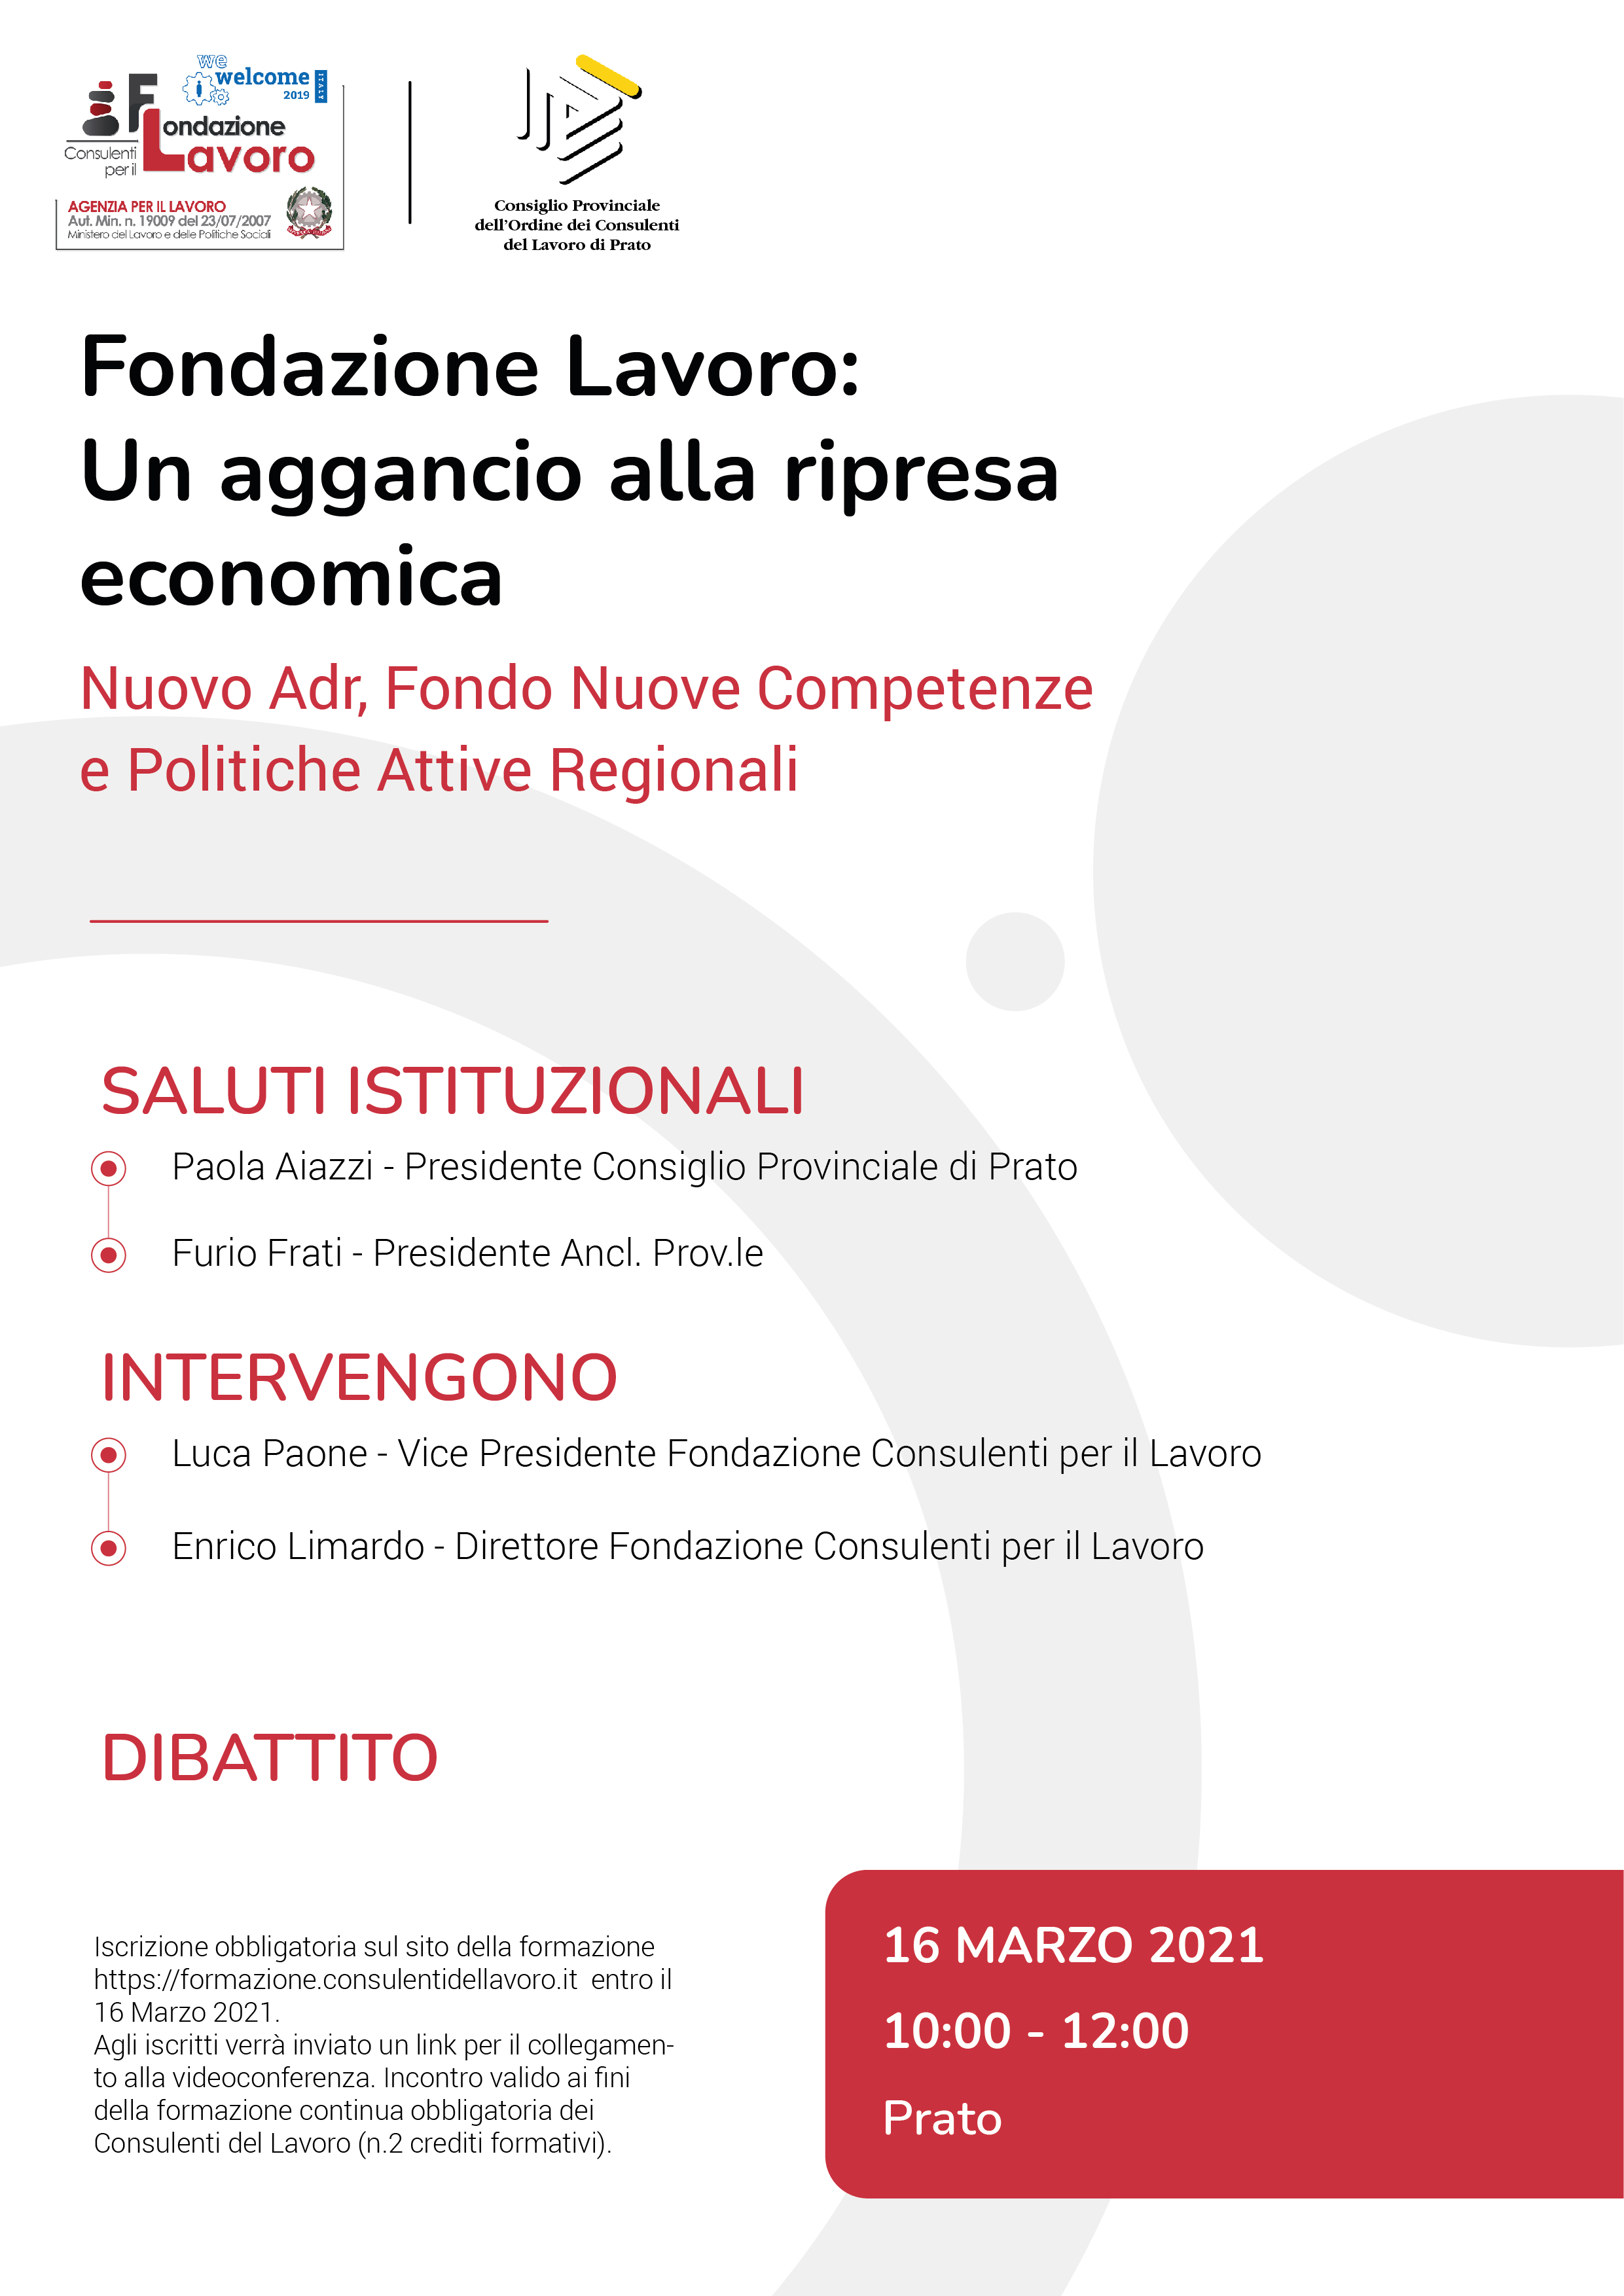 Fondazione Lavoro: Un aggancio alla ripresa economica Nuovo Adr, Fondo Nuove Competenze e Politiche Attive Regionali - Prato 16 marzo 2021